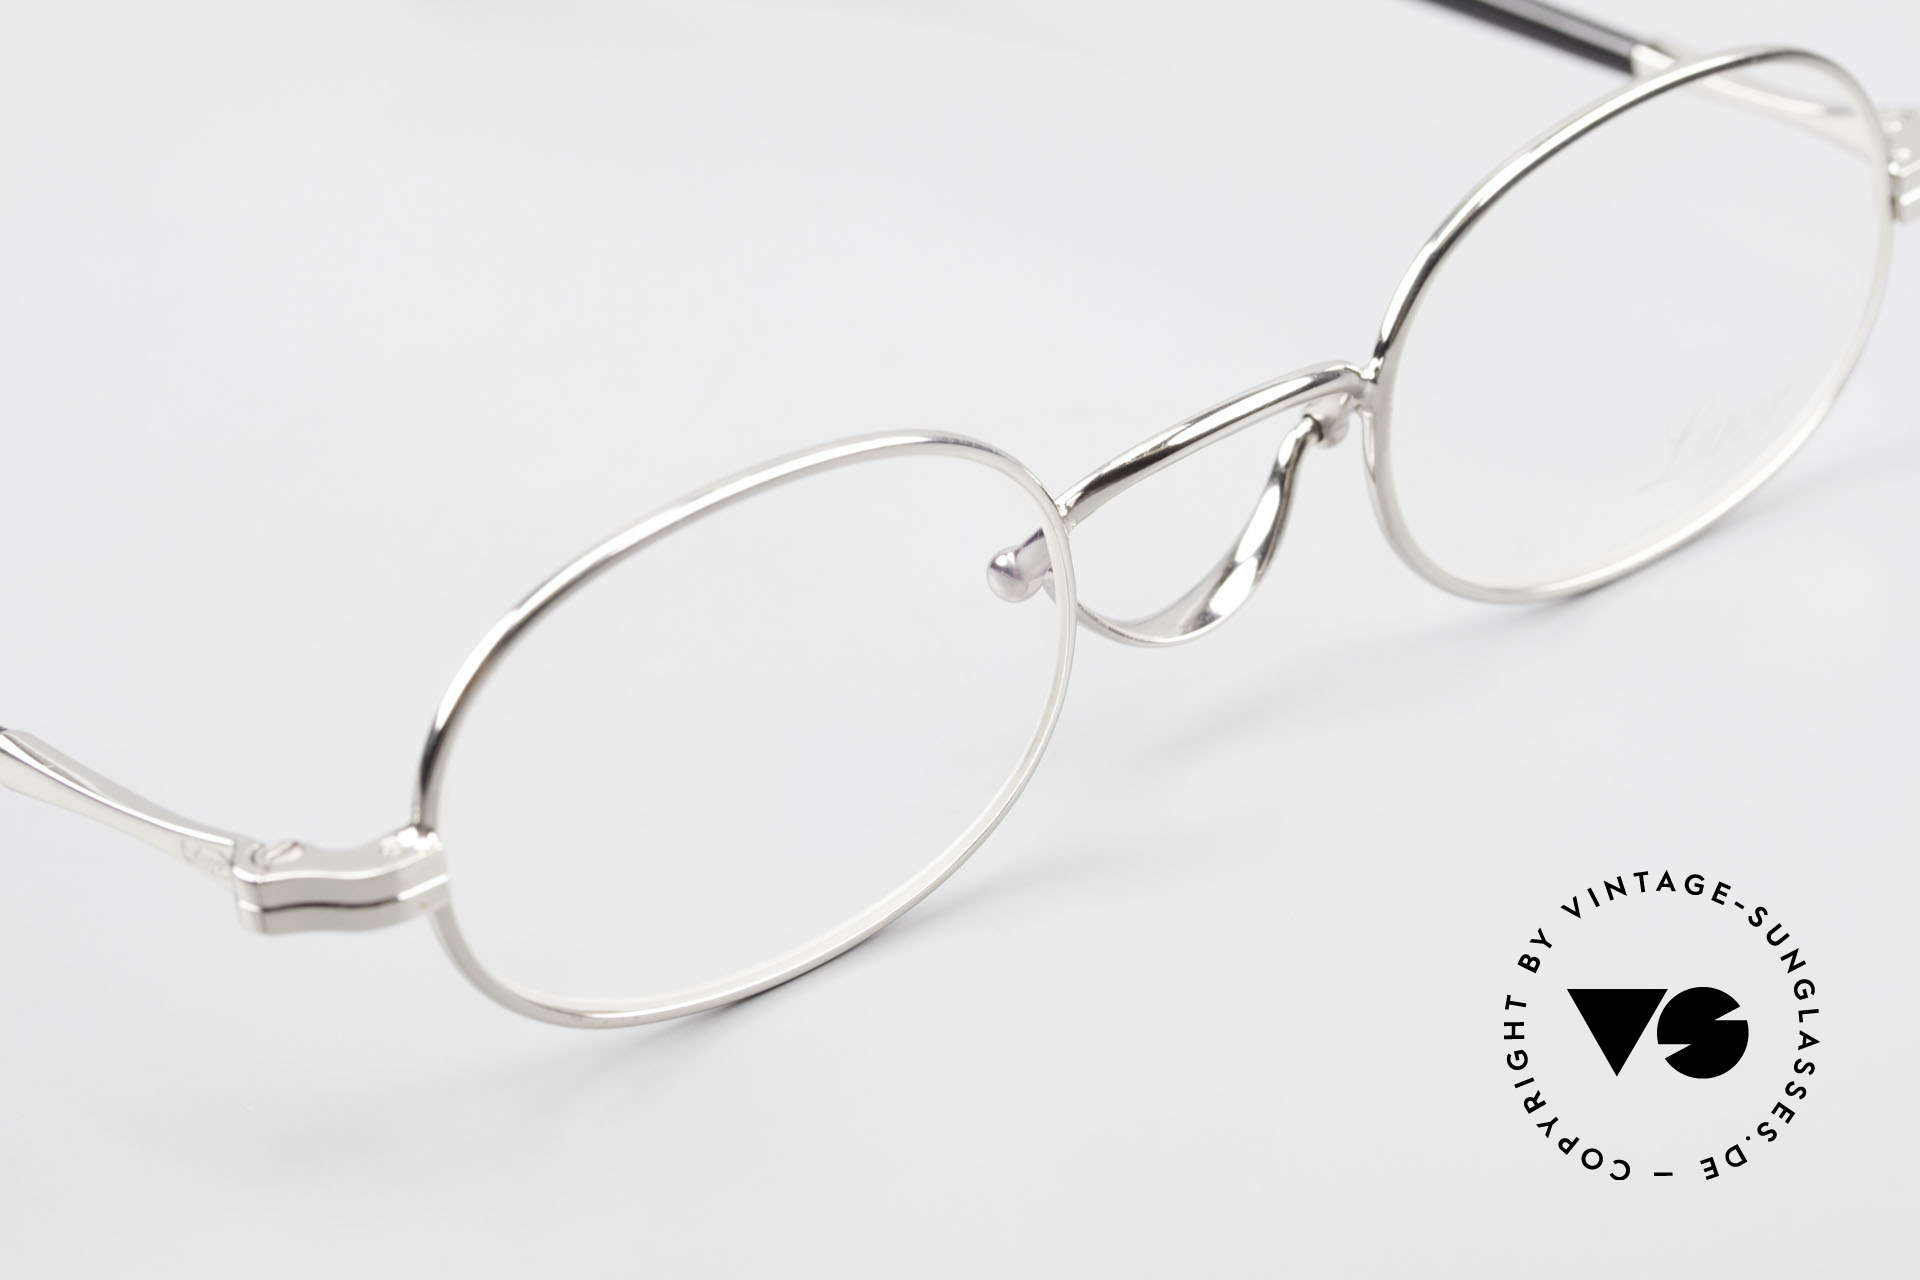 Lunor Swing A 36 Oval Vintage Brille Mit Schwenksteg, altes, unbenutztes Original mit edler Platin-Legierung, Passend für Herren und Damen